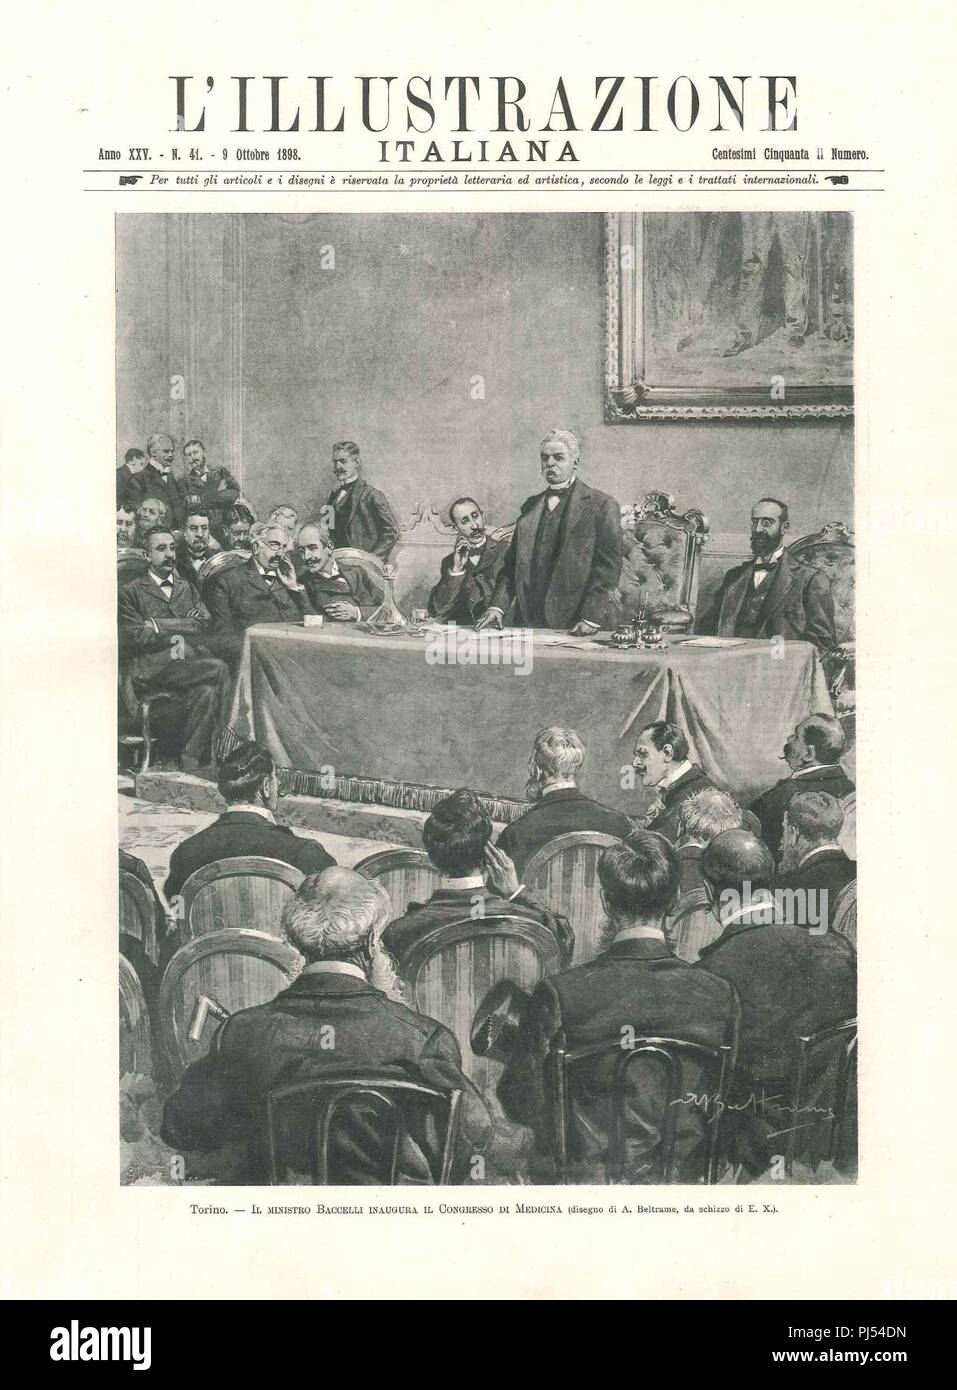 Baccelli inaugura il Congresso di Medicina di Torino, L'illustrazione italiana, 1898. Banque D'Images